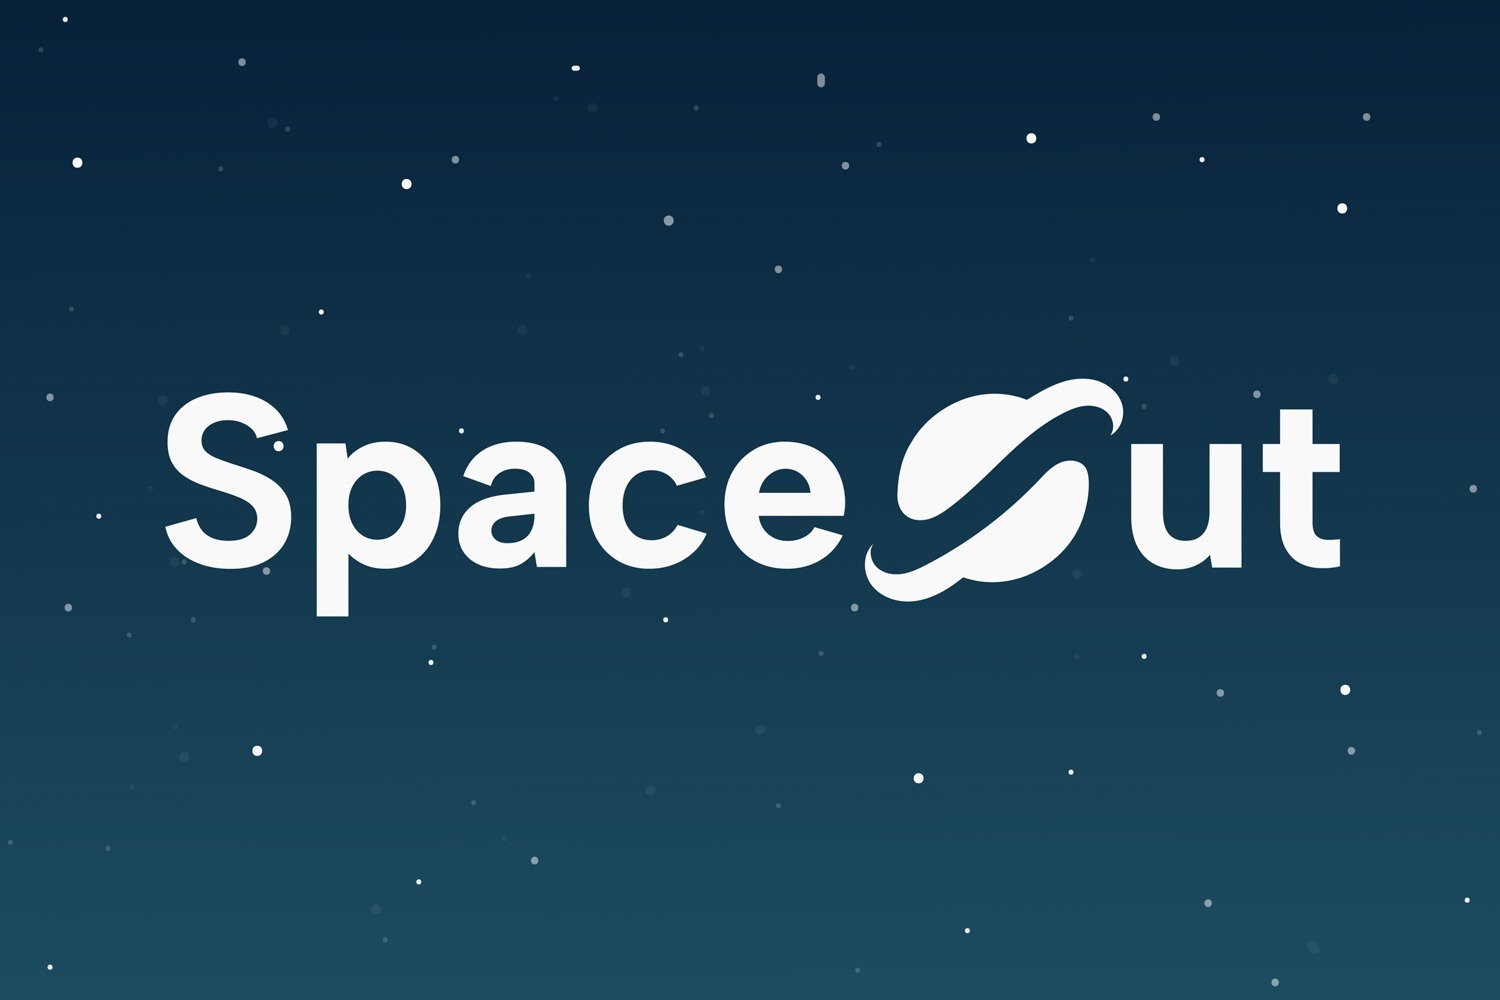 Portefølje cover for SpaceOut. Logoen SpaceOut er plassert på en mørk bakgrunn med stjerner